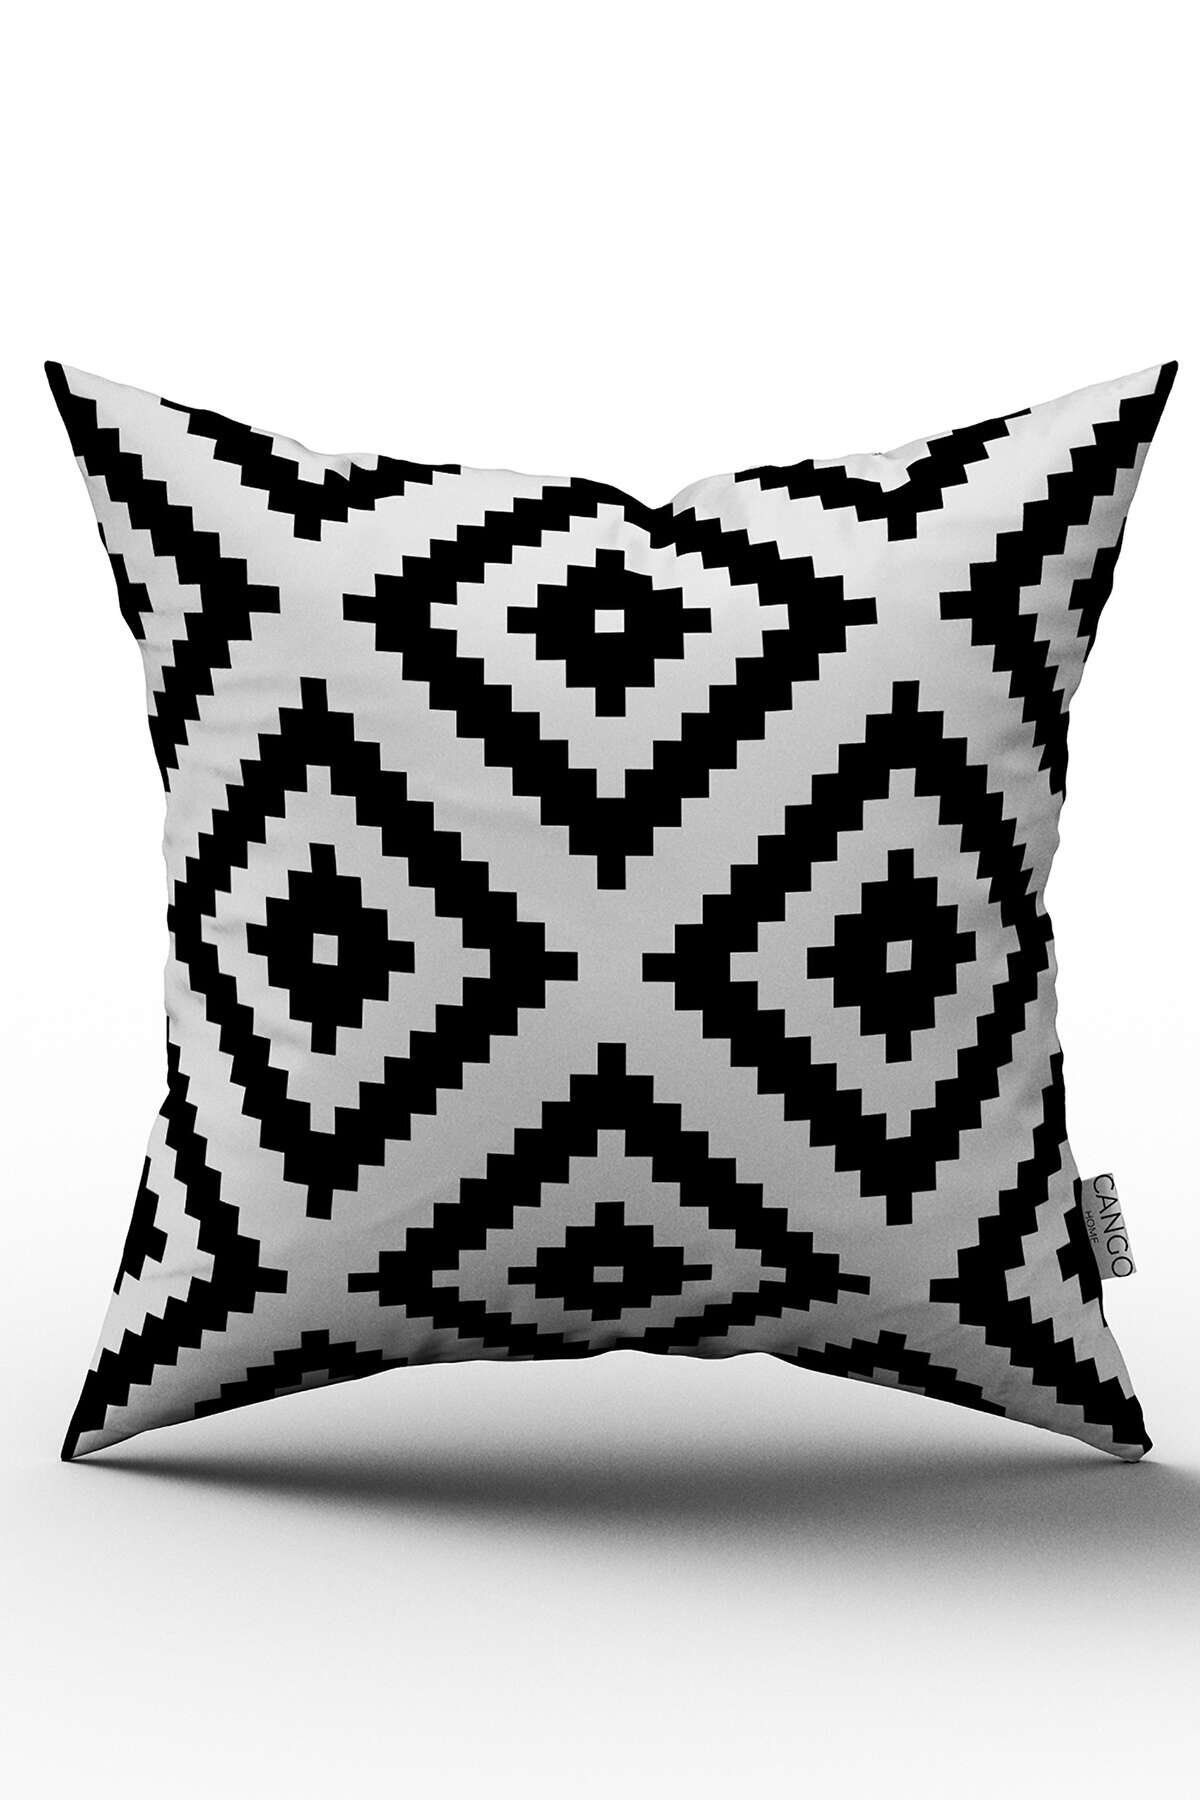 Cango Home Beyaz Siyah Geometrik Baklava Desenli Dijital Baskılı Kırlent Kılıfı - Otyk556